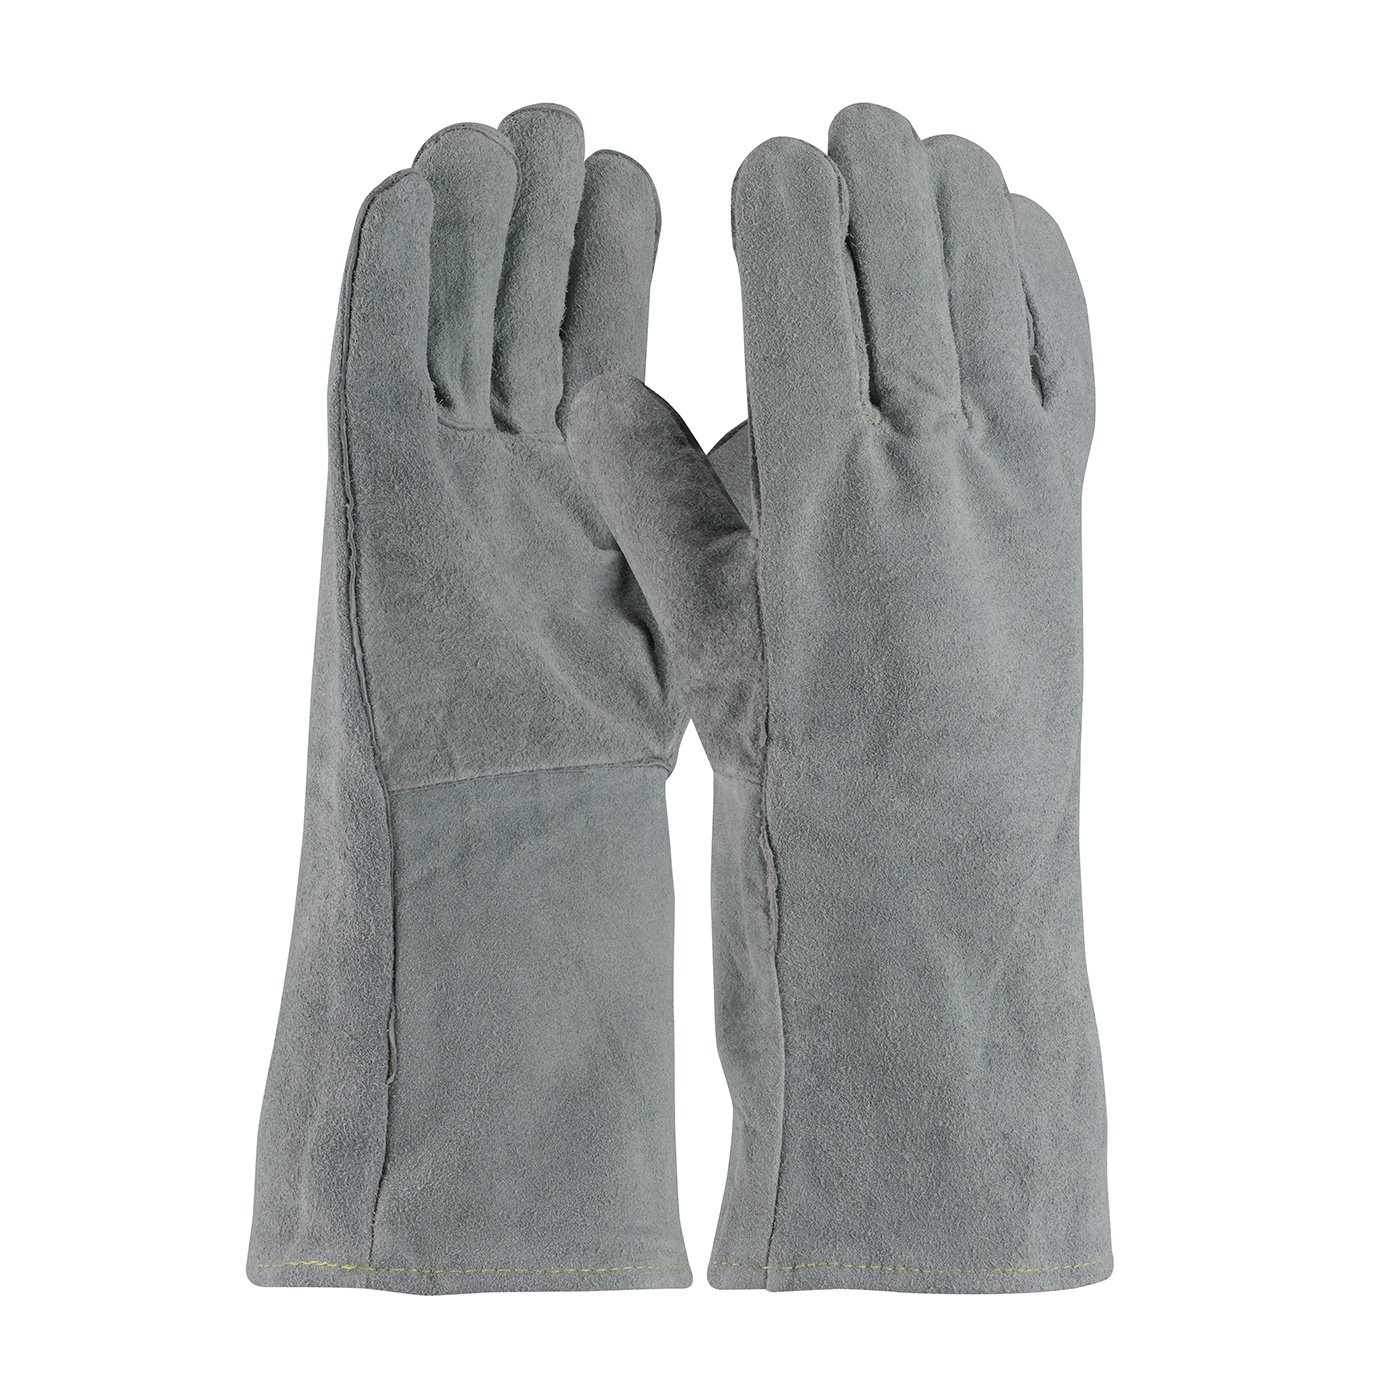 Economy Leather Welding Gloves